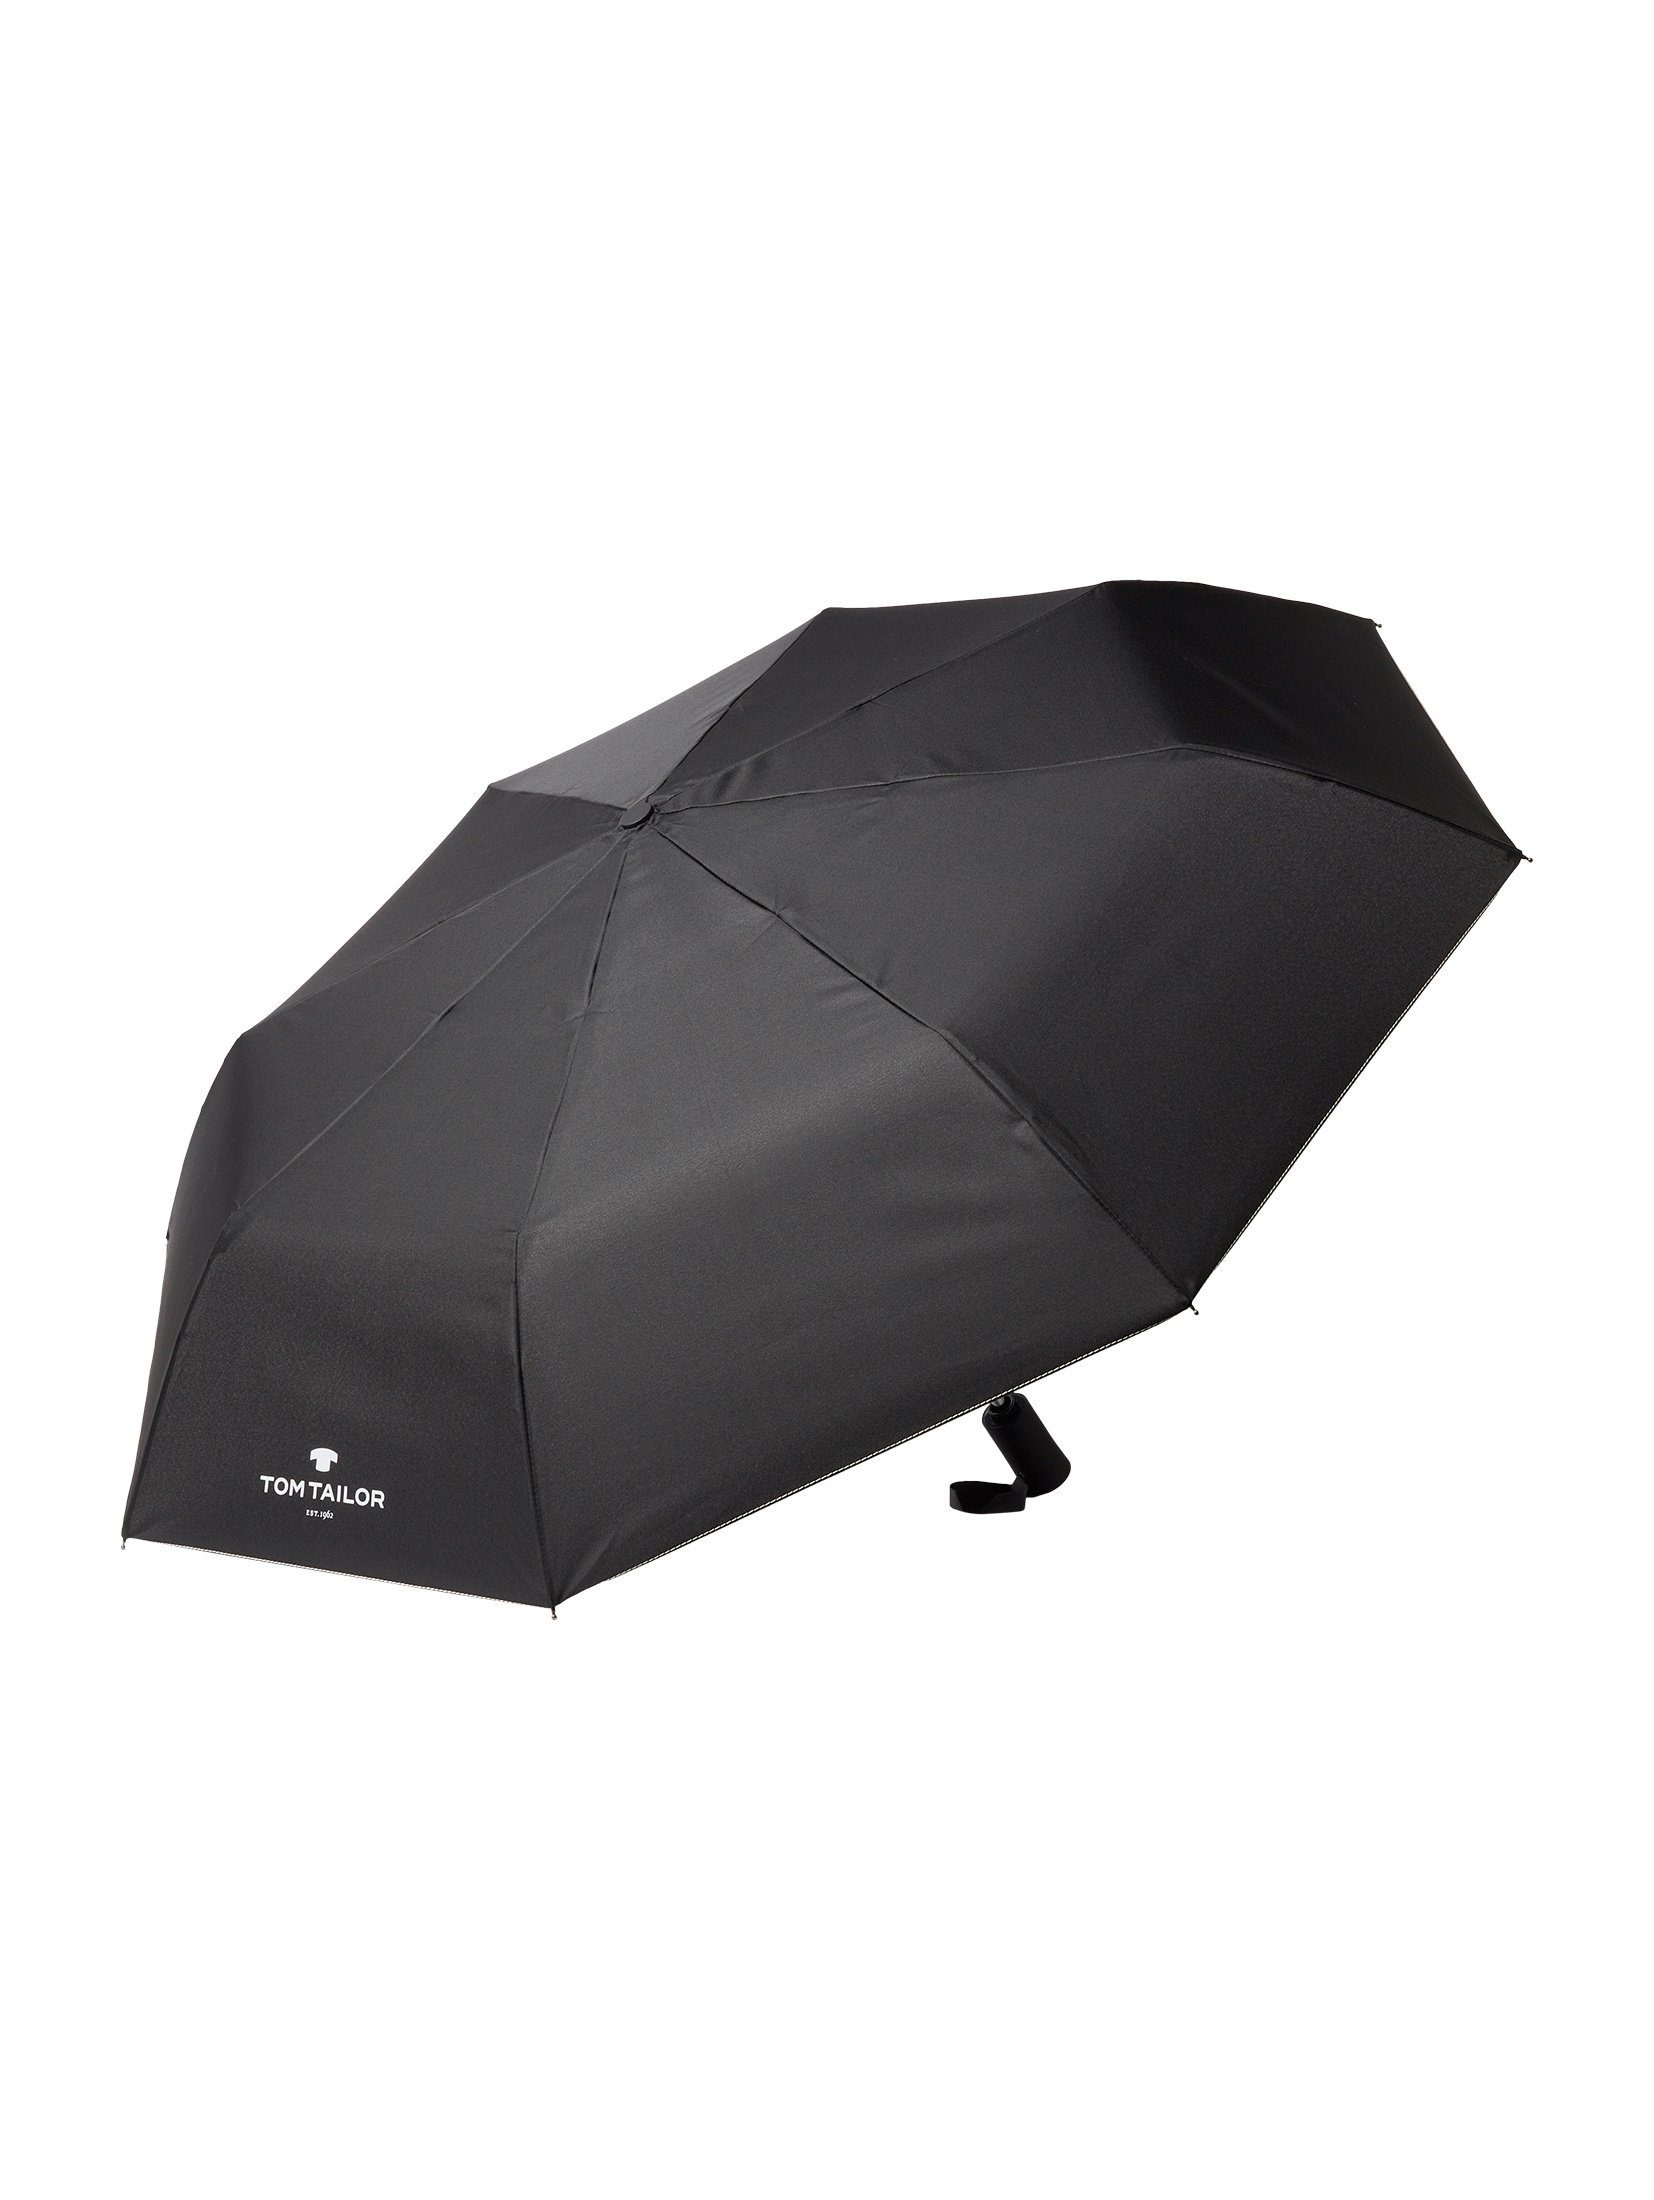 TOM TAILOR Taschenregenschirm Kleiner Automatik Regenschirm black